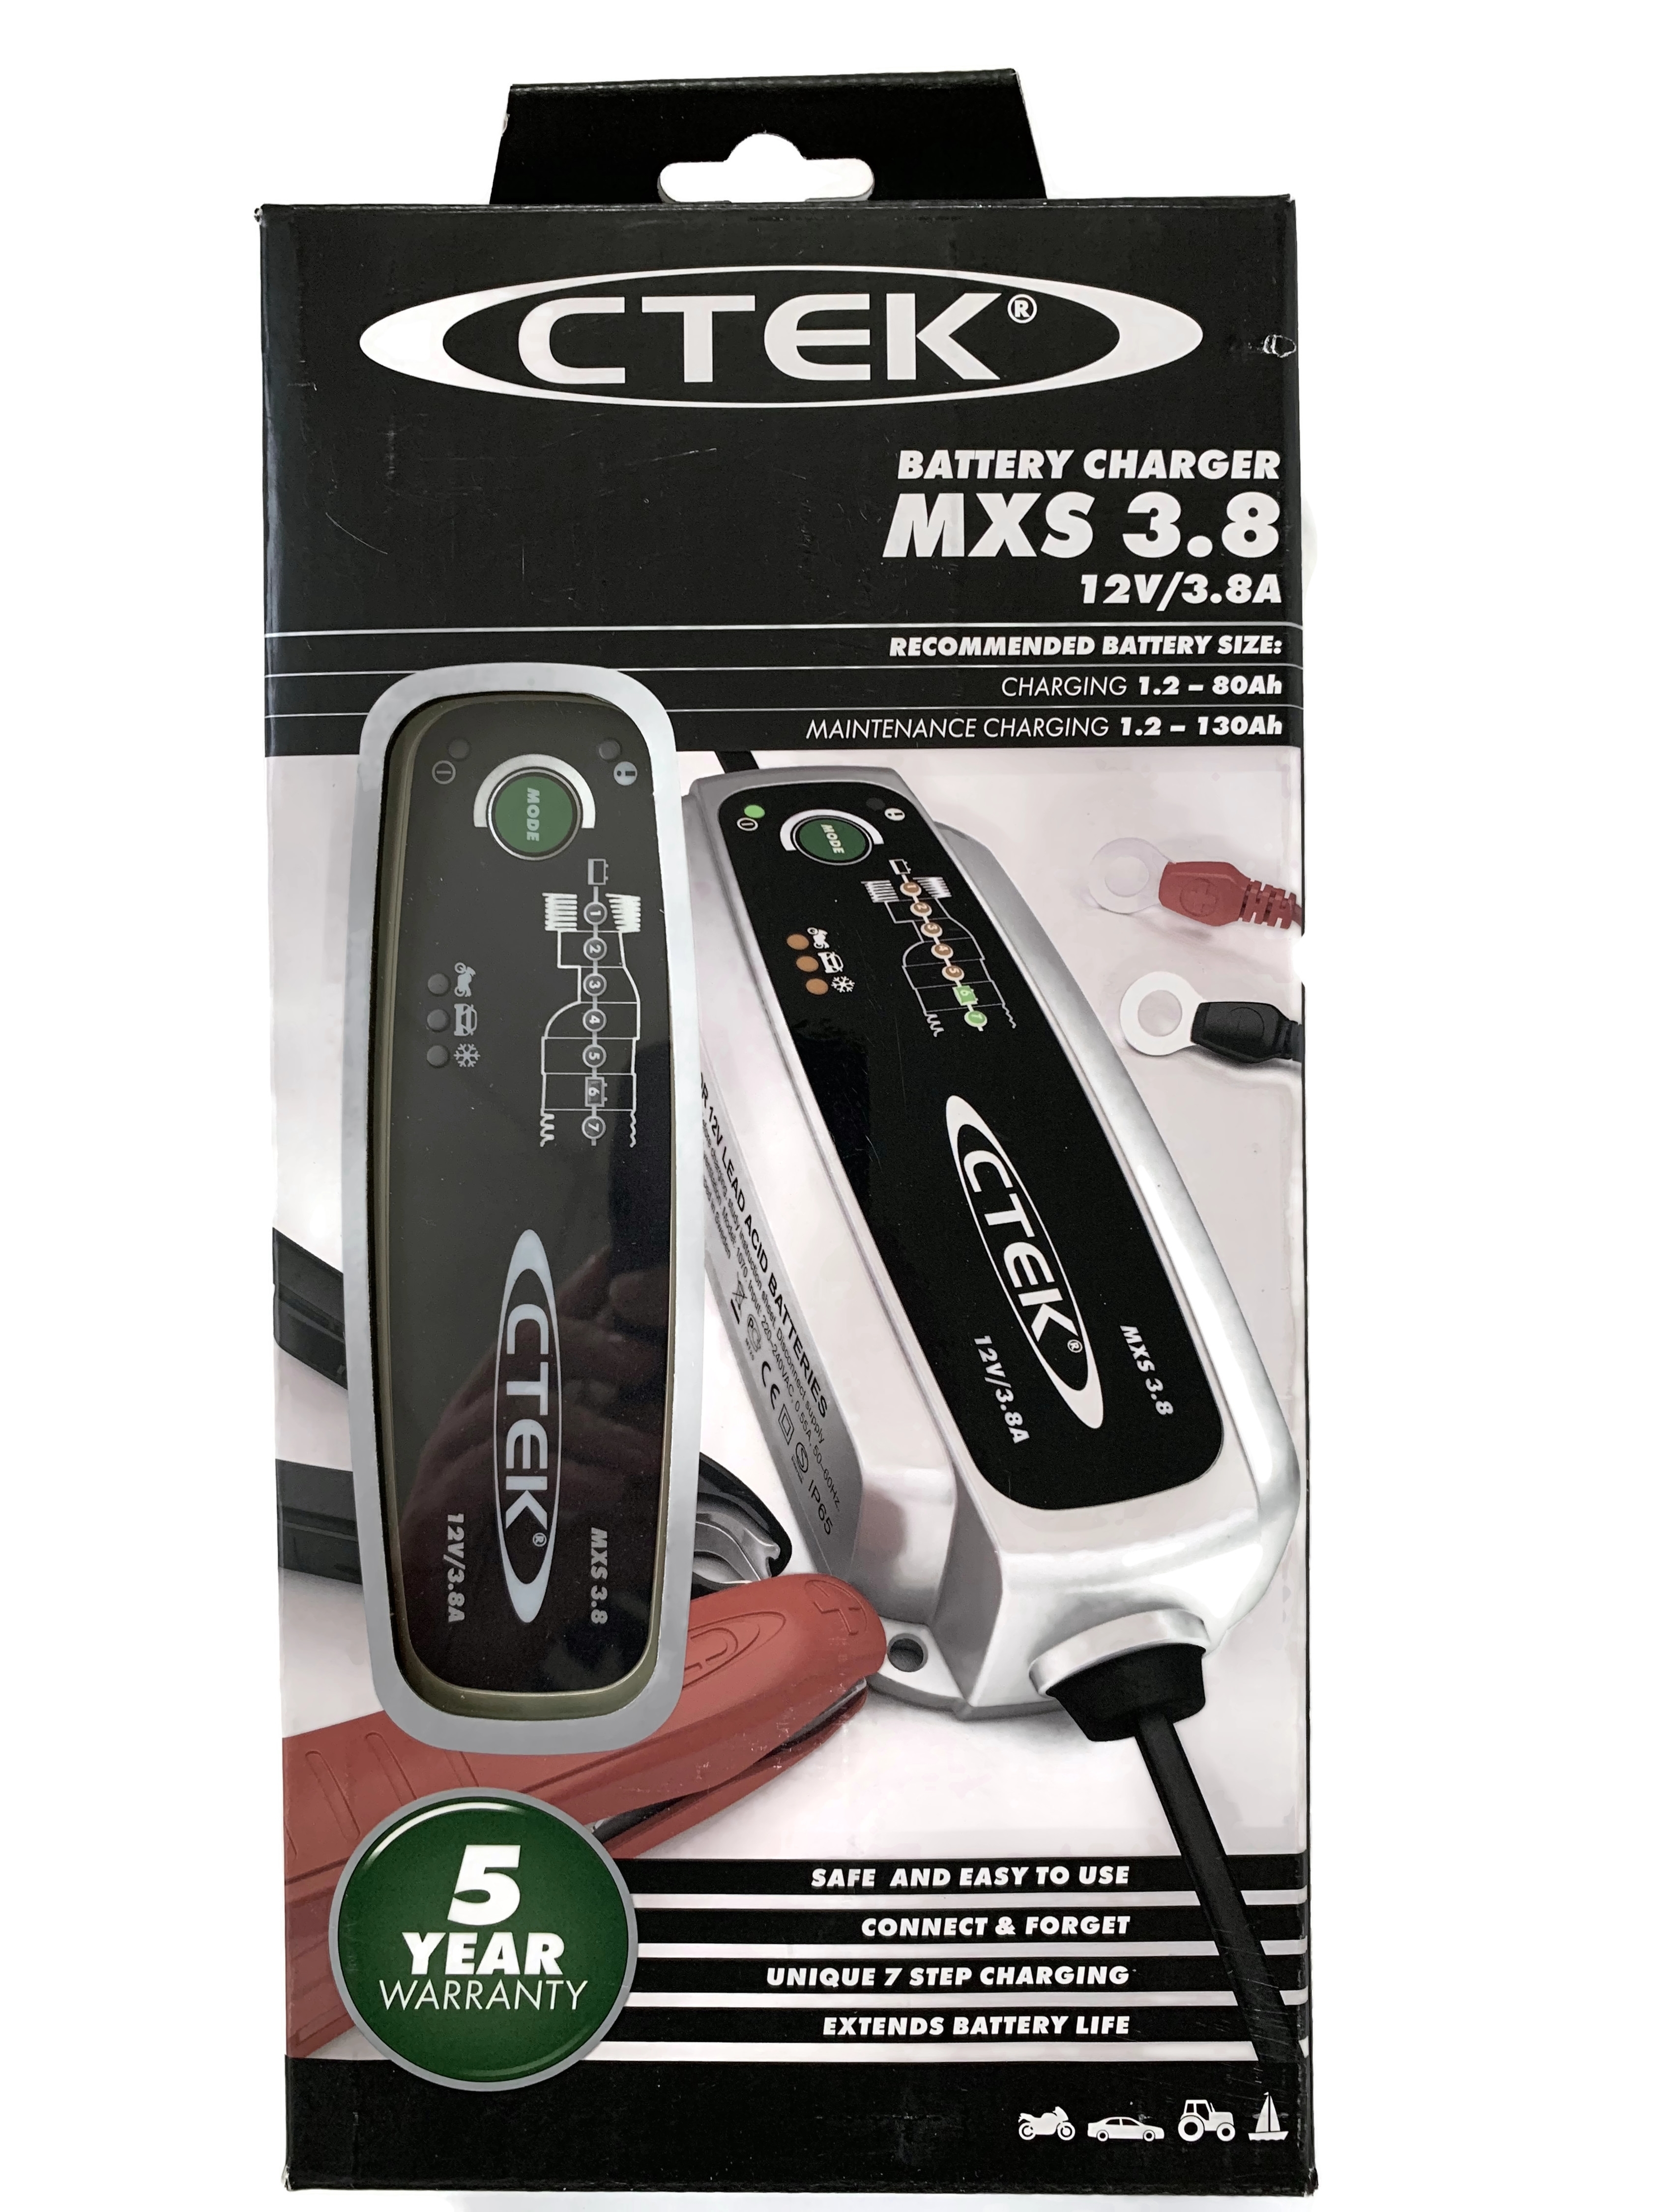 CTEK Batterie Ladegerät MXS 3.8 12V 0,8 / 3.8 A